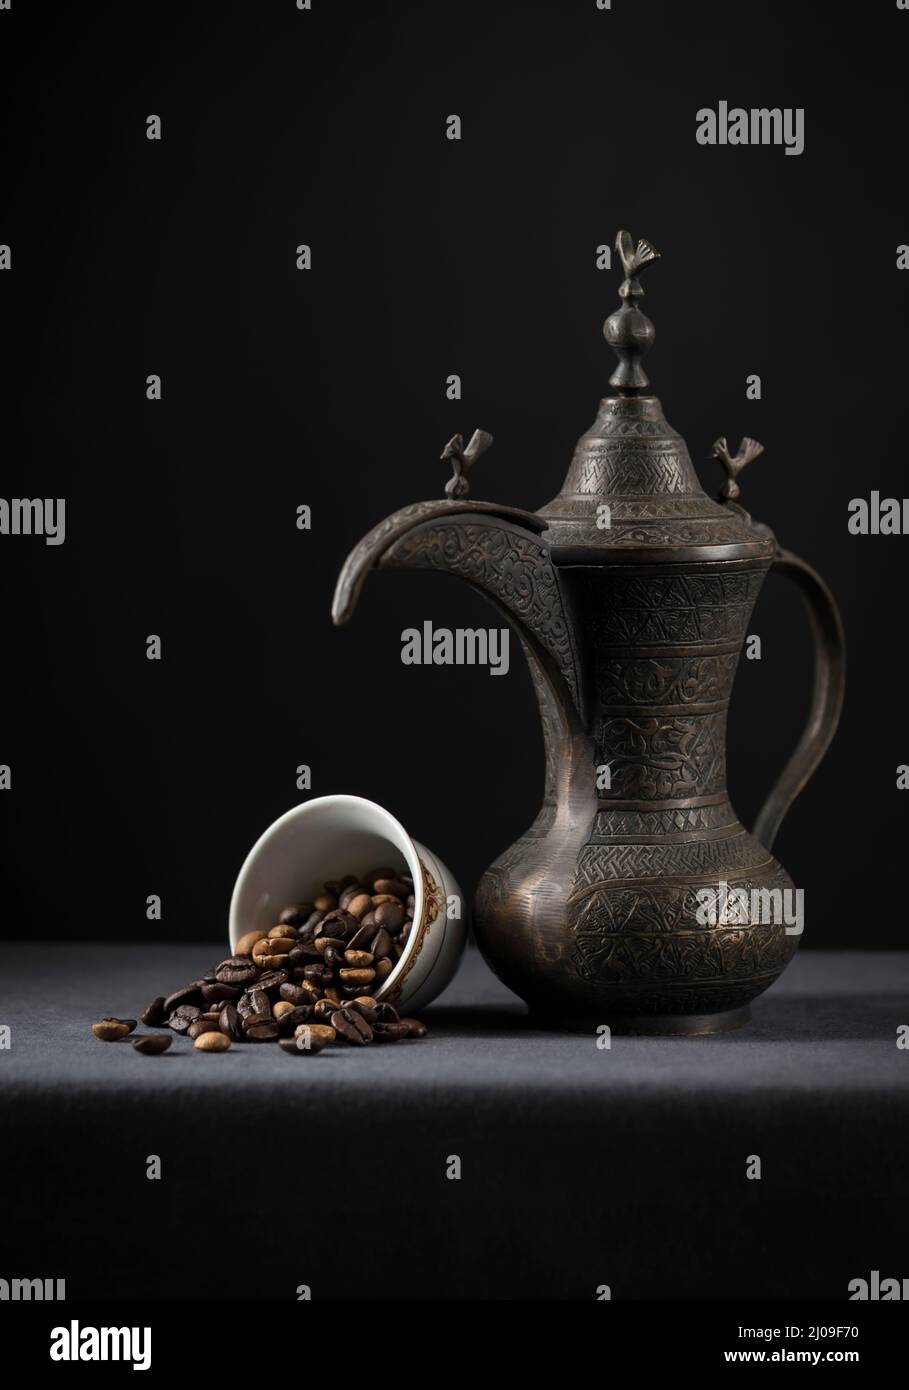 Antica caffettiera araba con chicchi di caffè torrefatto. I chicchi di caffè fuoriescono da una tazza. Fotografia di scorta. Foto Stock